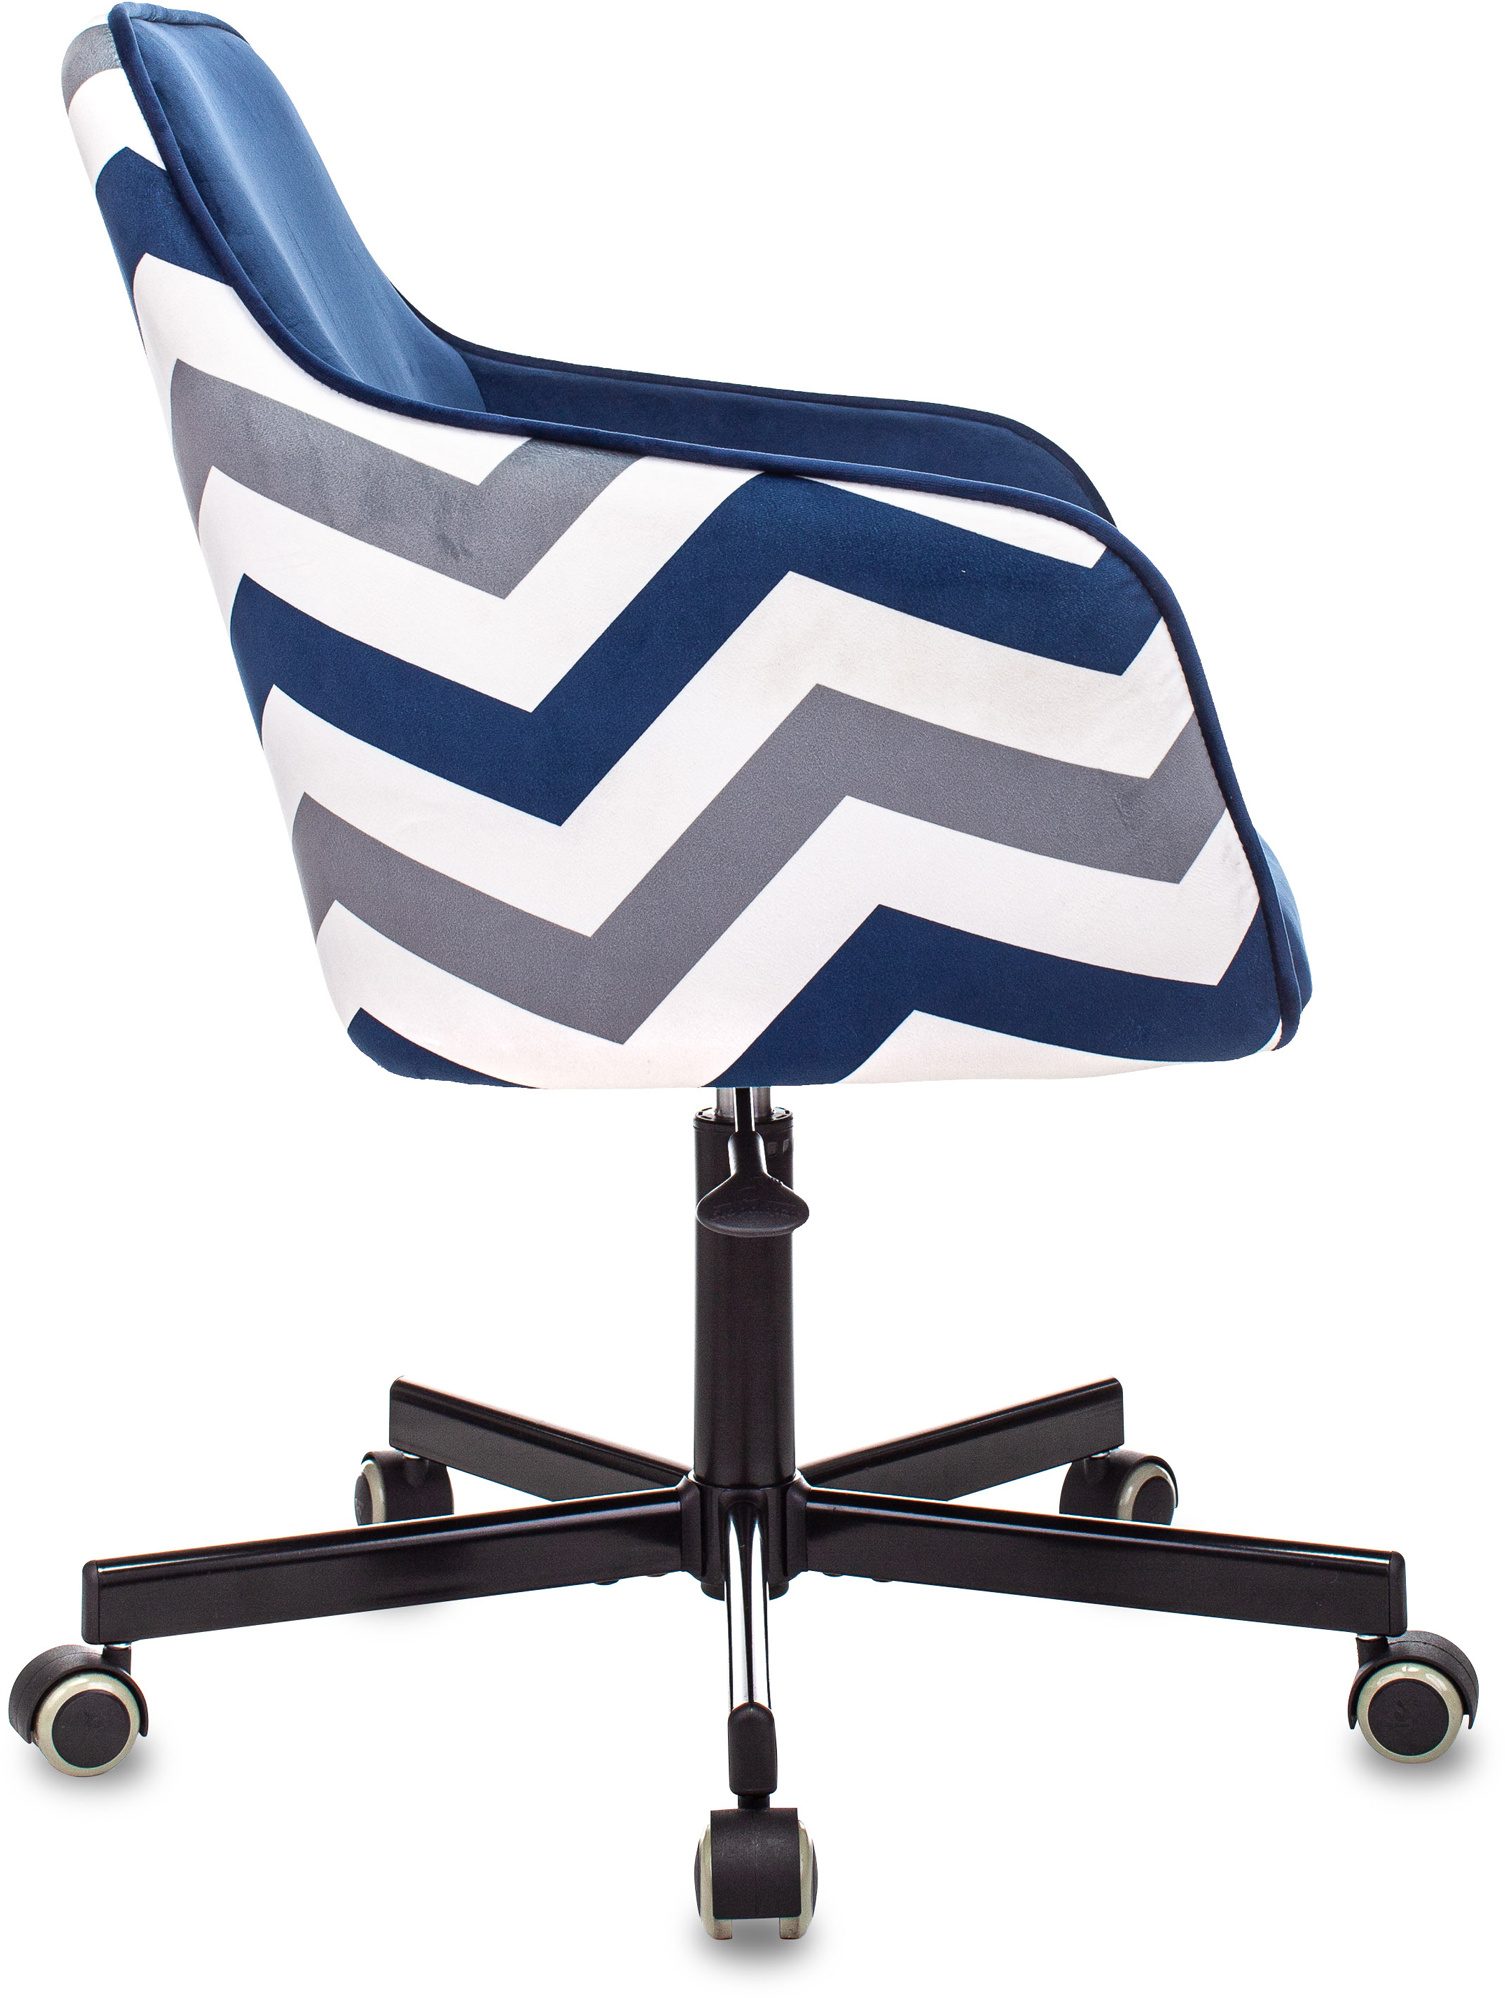 Кресло Бюрократ CH-380M, обивка: ткань, цвет: сапфировый, рисунок зигзаг (CH-380M/ZIG/BLUE) от магазина Buro.store